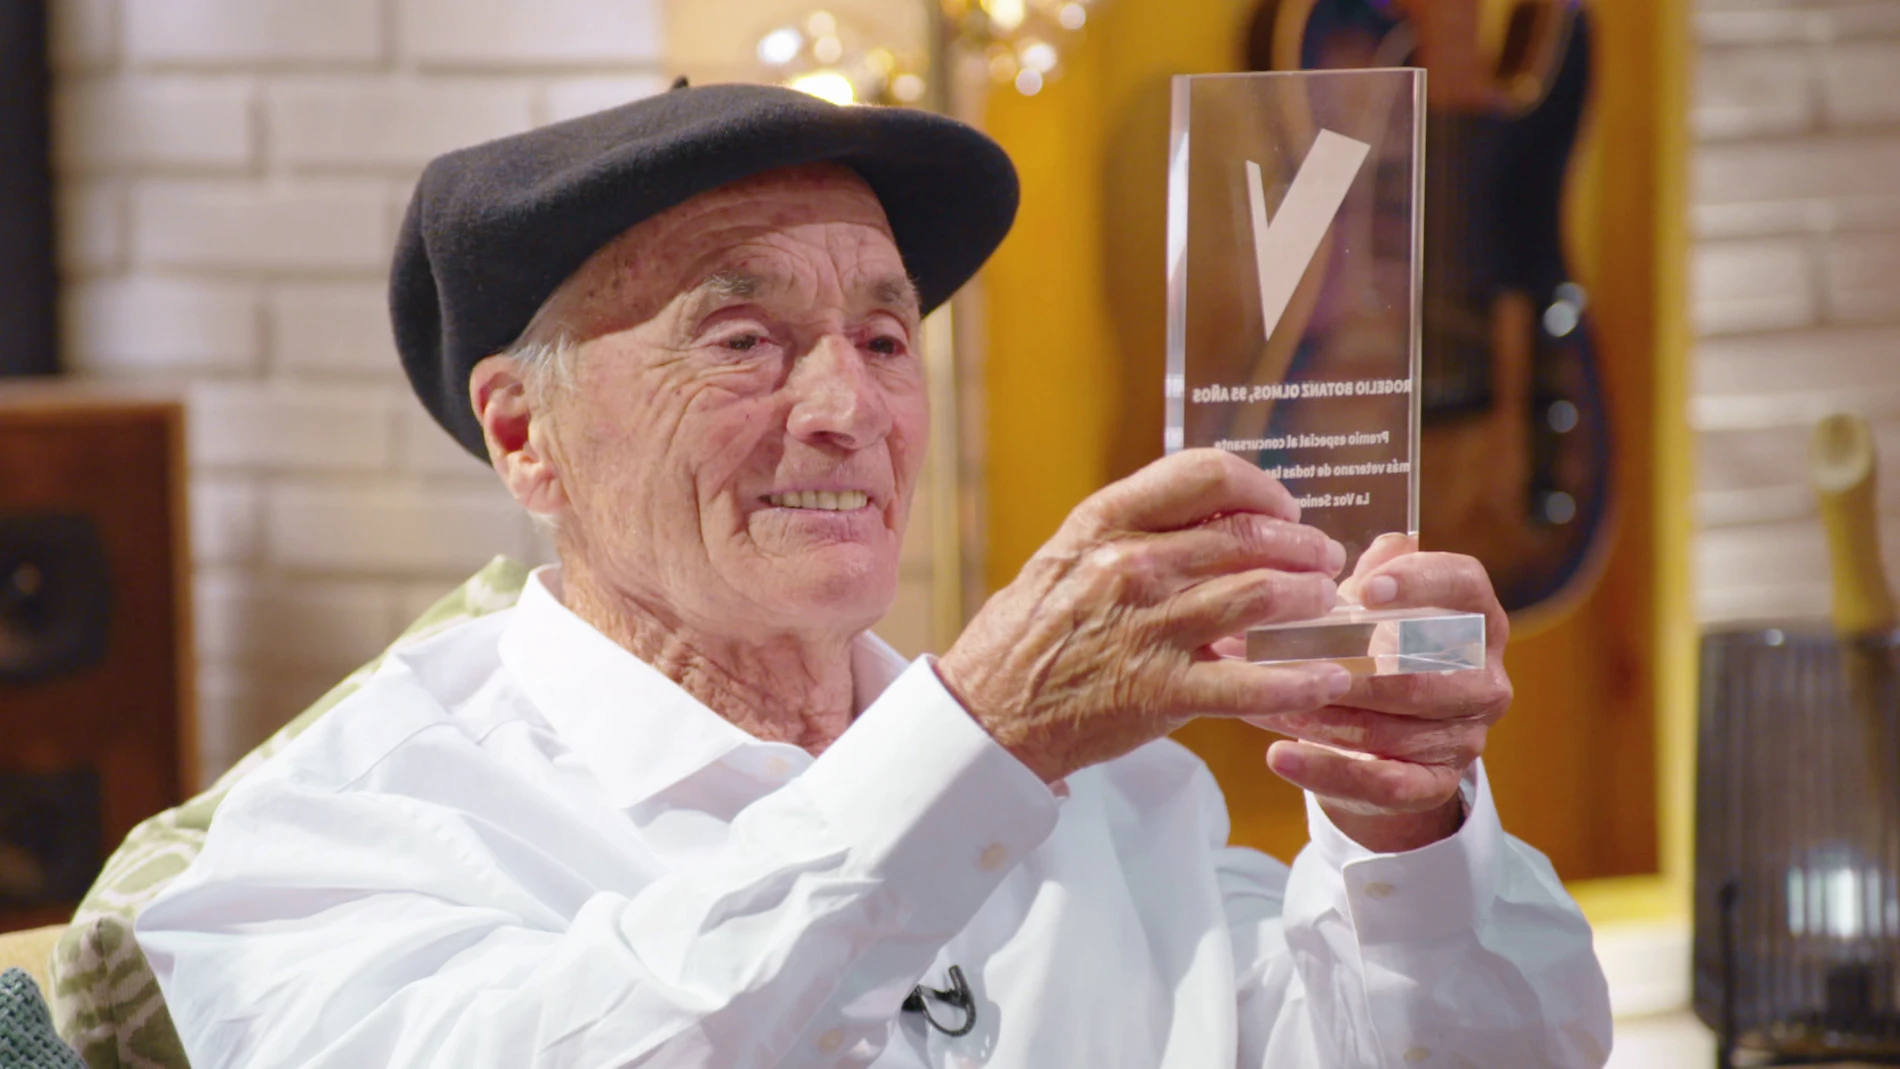 La tierna historia de Rogelio, el más veterano de ‘La Voz Senior’ en el mundo con 95 años: “Loco de contento estoy”